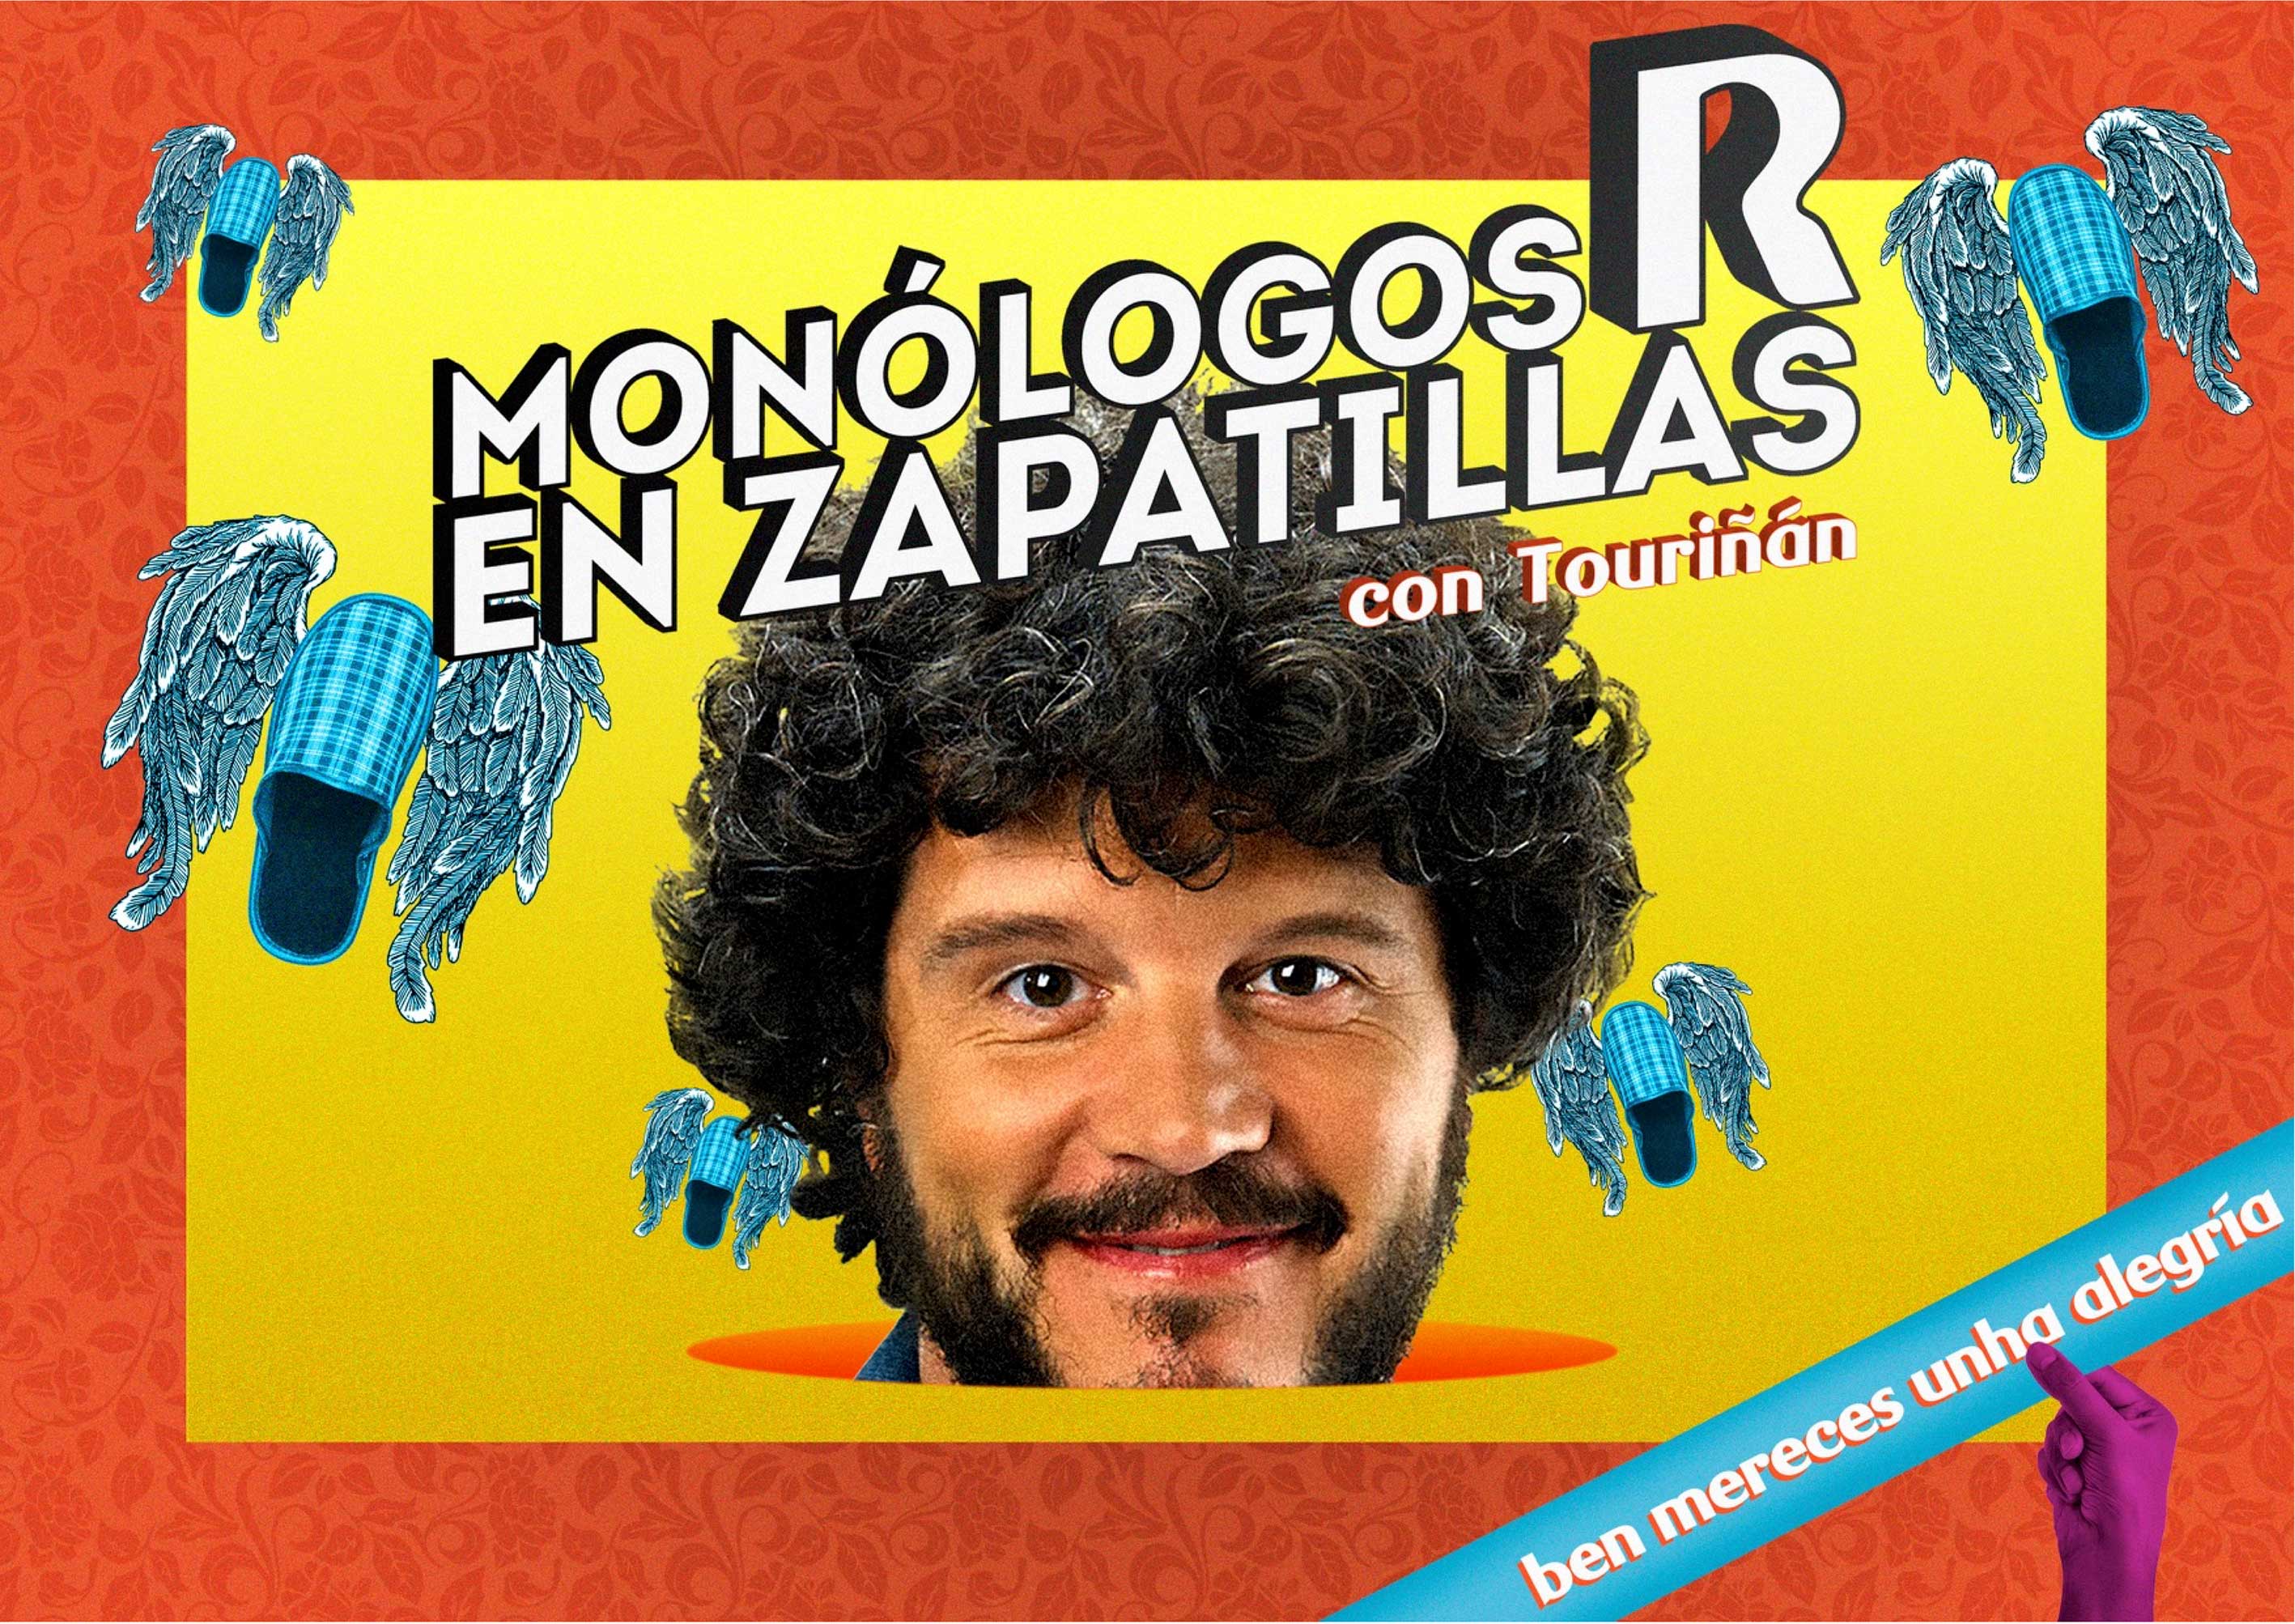 R - Monólogos en zapatillas by quattro idcp - Creative Work - $i